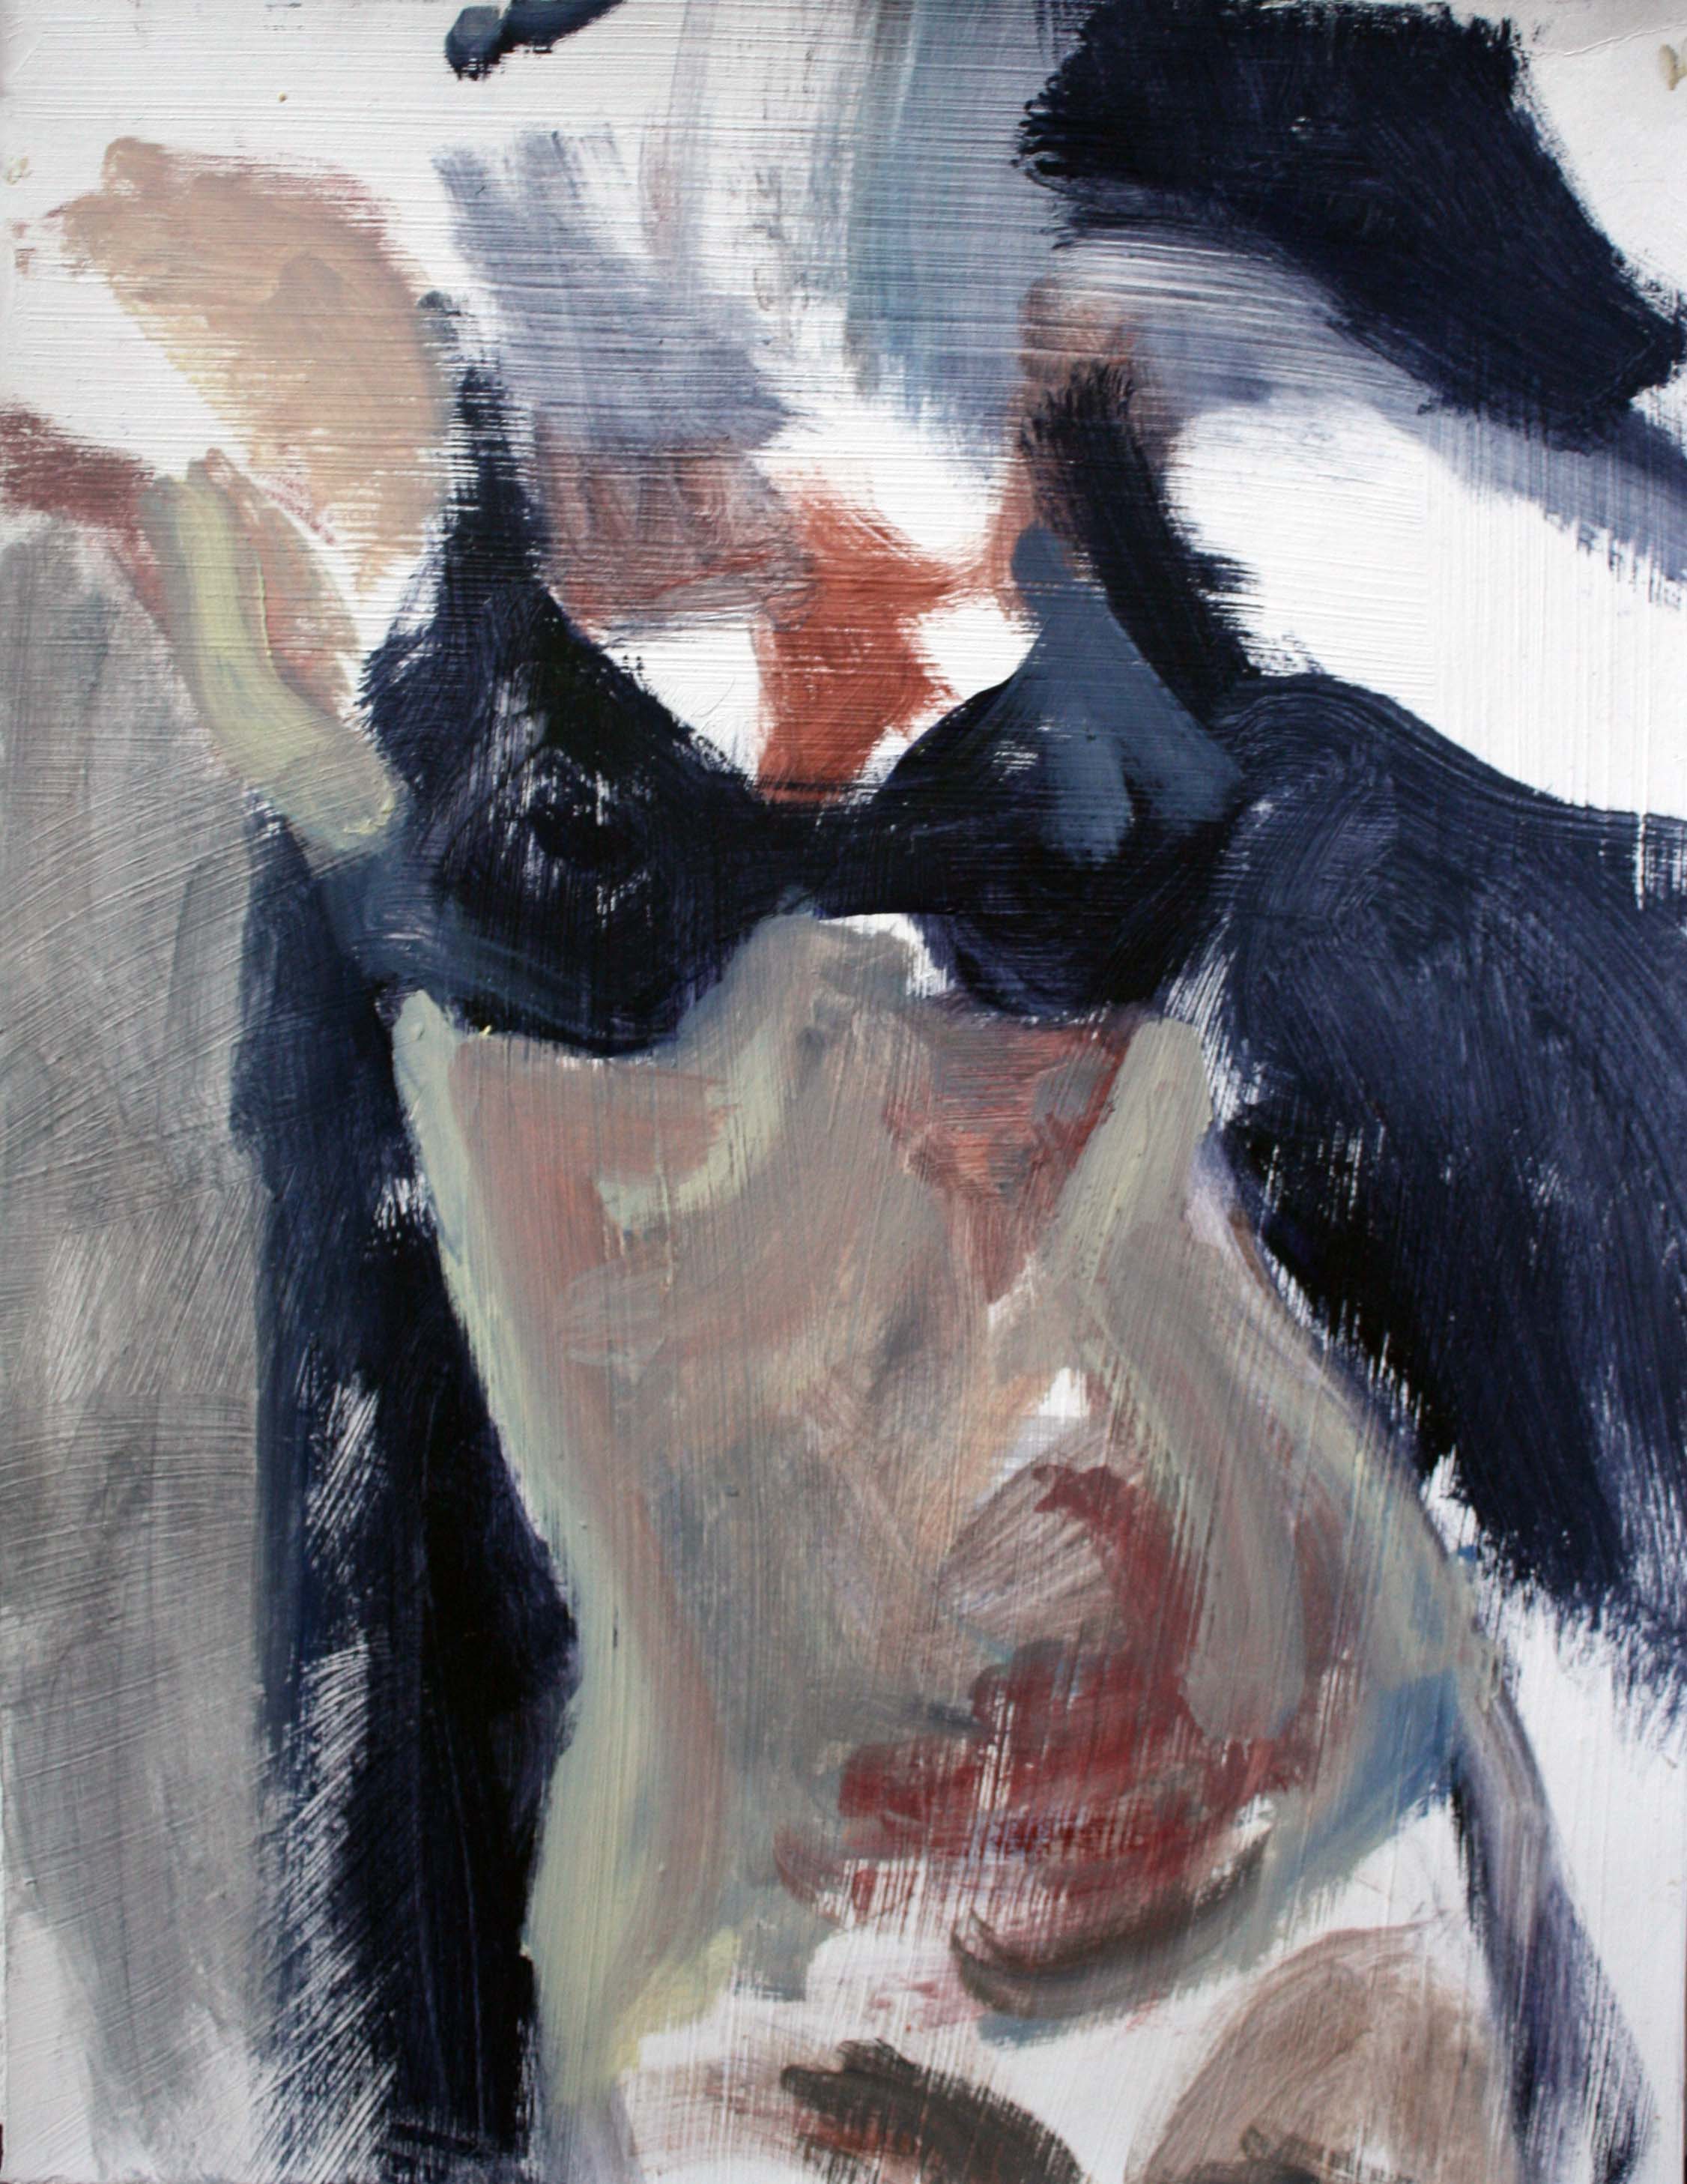   Torso , 2009. Oil on prepared paper, 14 x 11" 